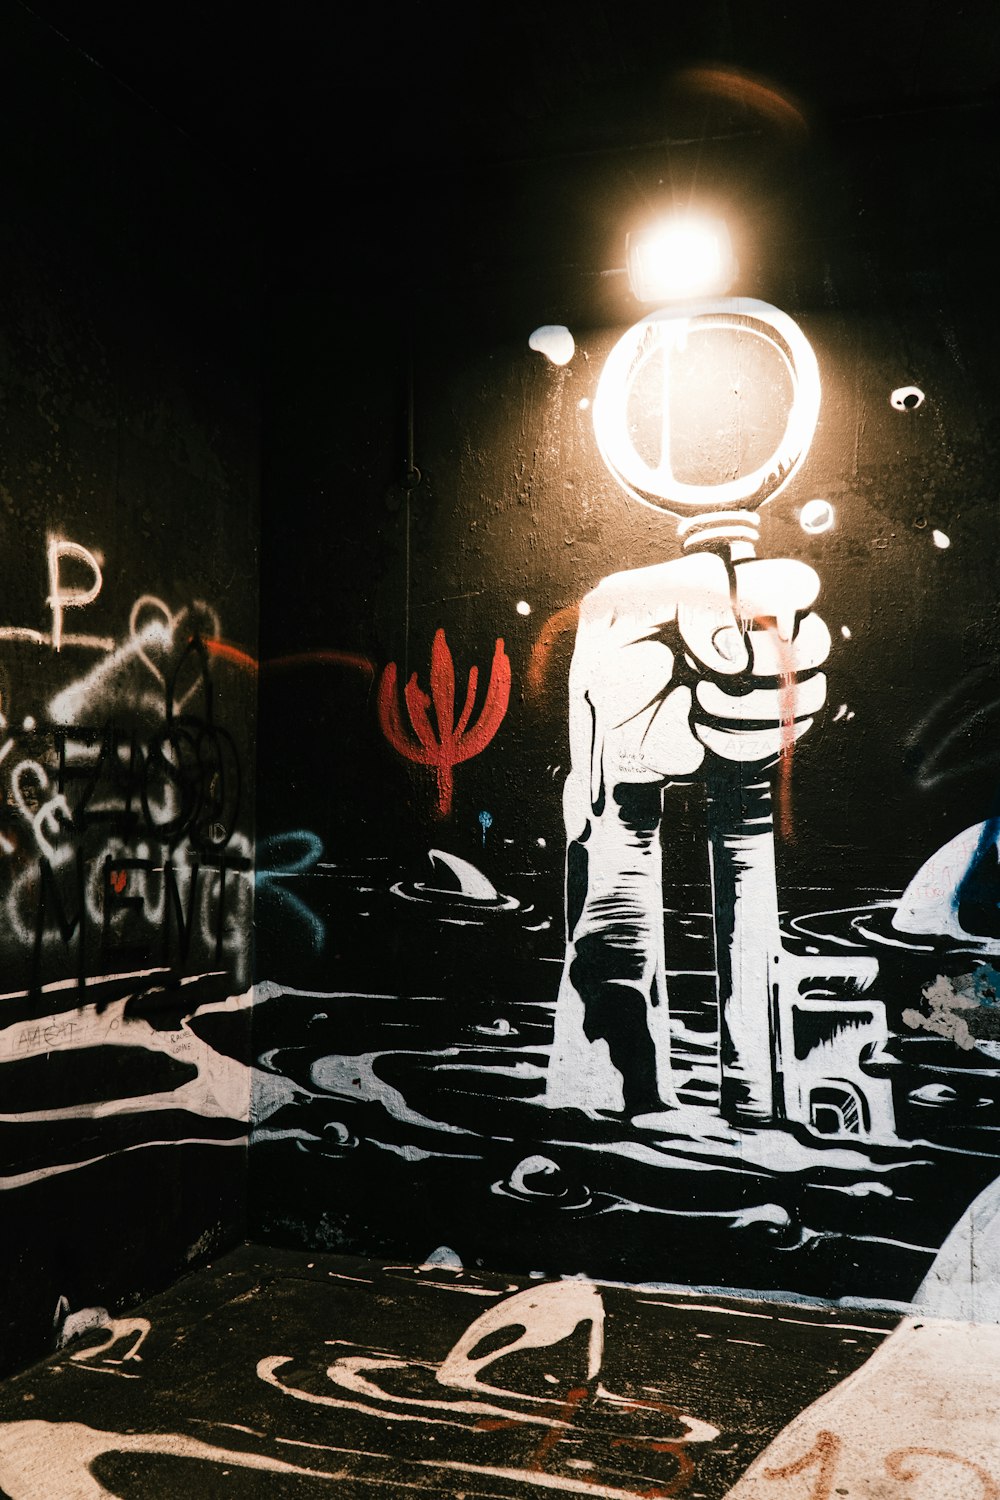 uomo in giacca e pantaloni neri in piedi davanti al muro con graffiti